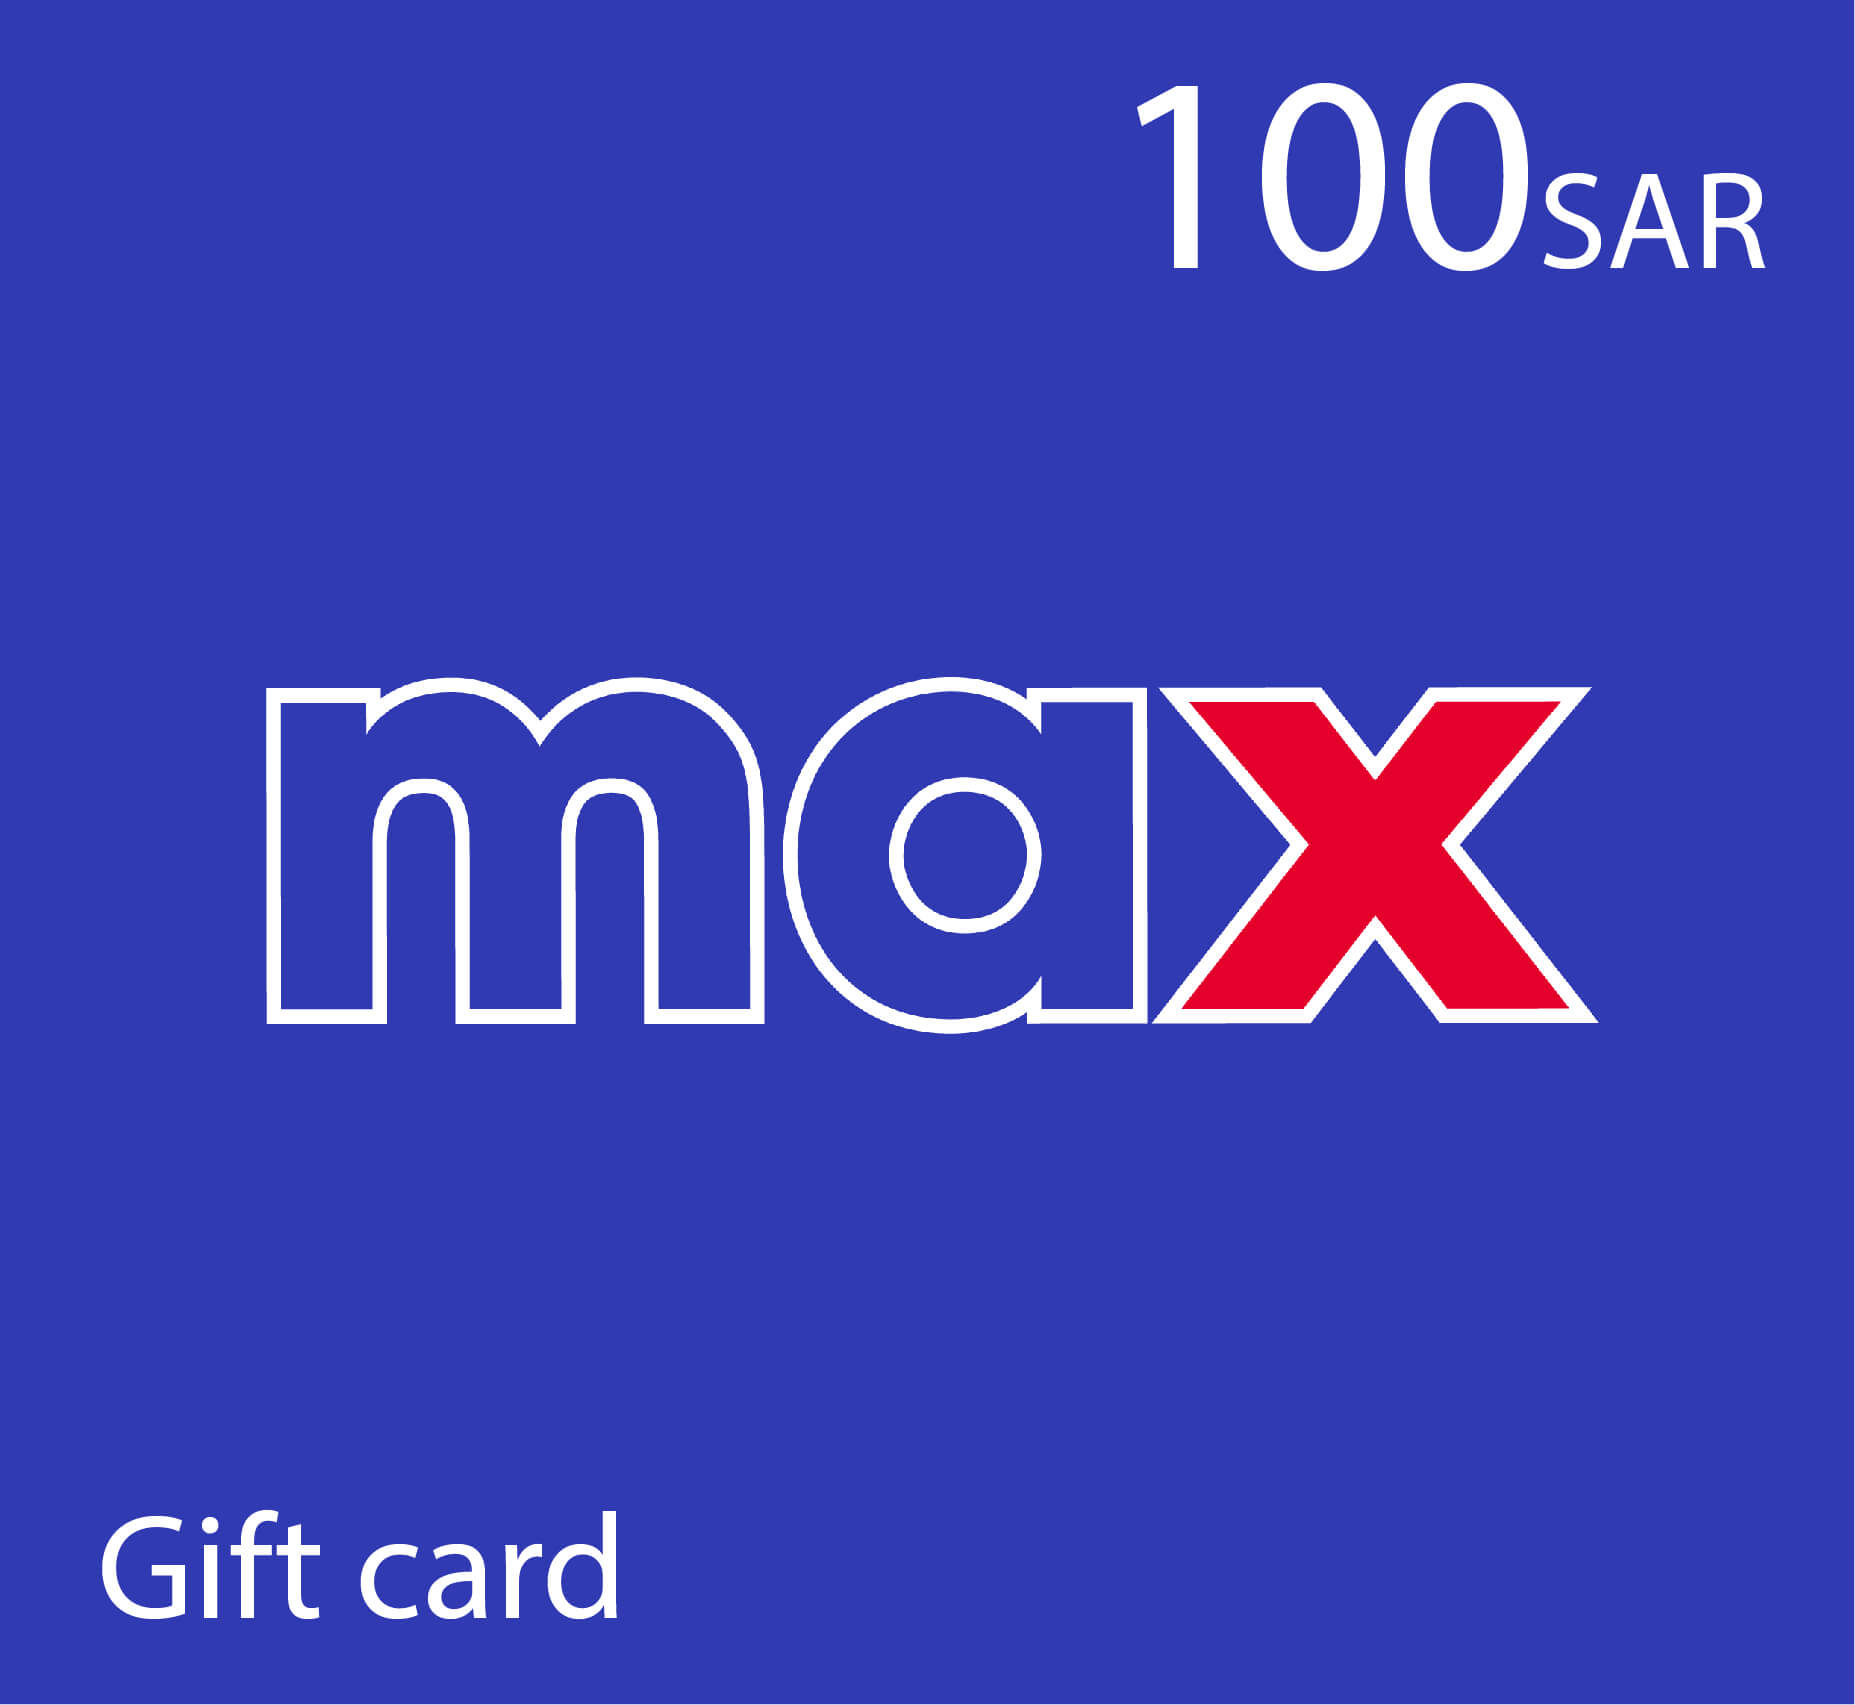 Max Gift card - 100 SAR